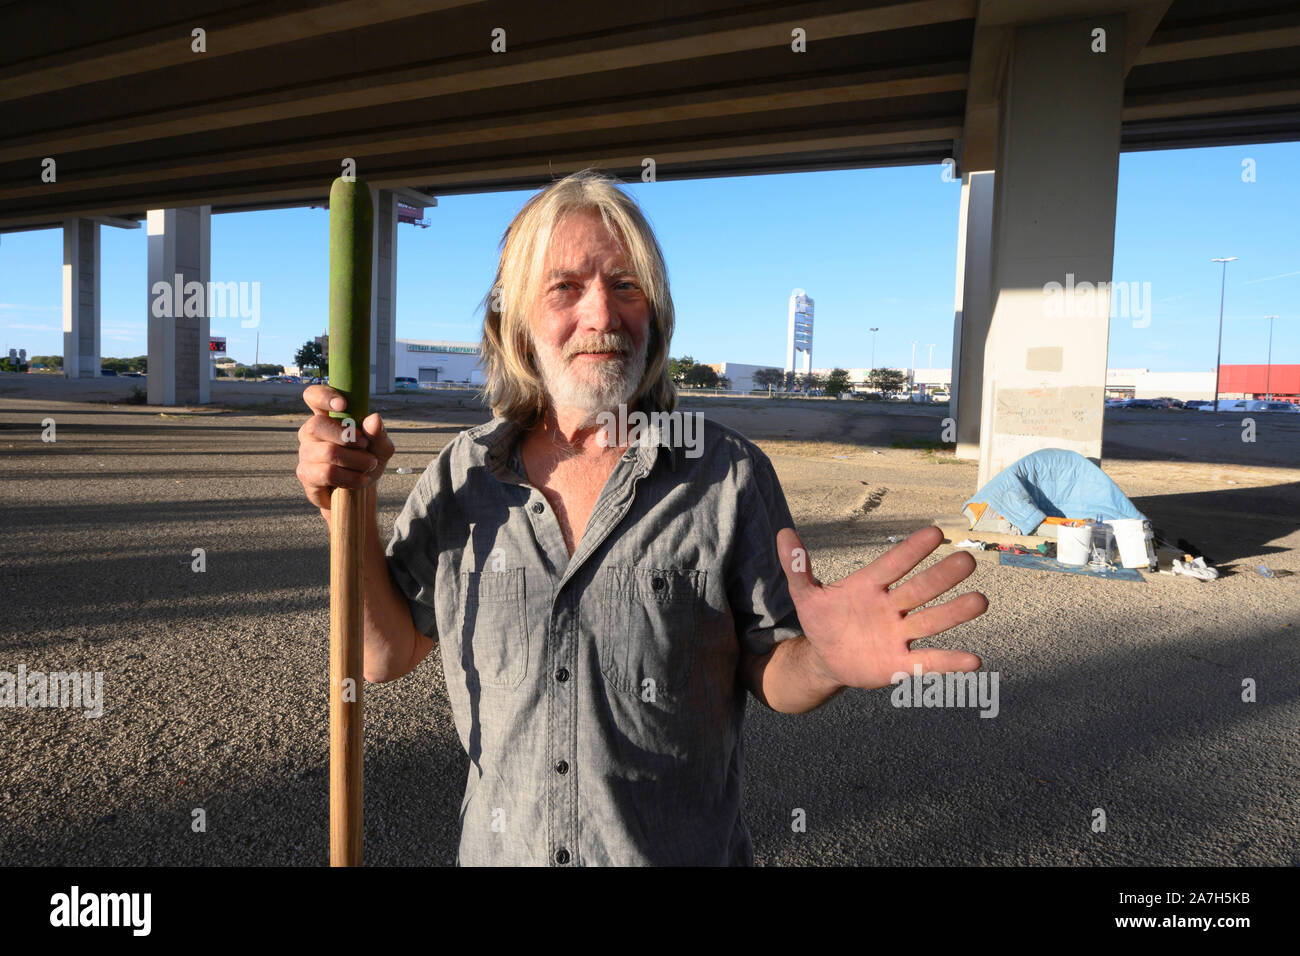 Dopo Texas Gov. Greg Abbott ha annunciato un giro di vite sulla accampamenti in spazi pubblici, un uomo pulisce l'area sotto una Austin, Texas, autostrada sopraelevata dove lui e altri hanno impostato un accampamento provvisorio per i senzatetto. Foto Stock